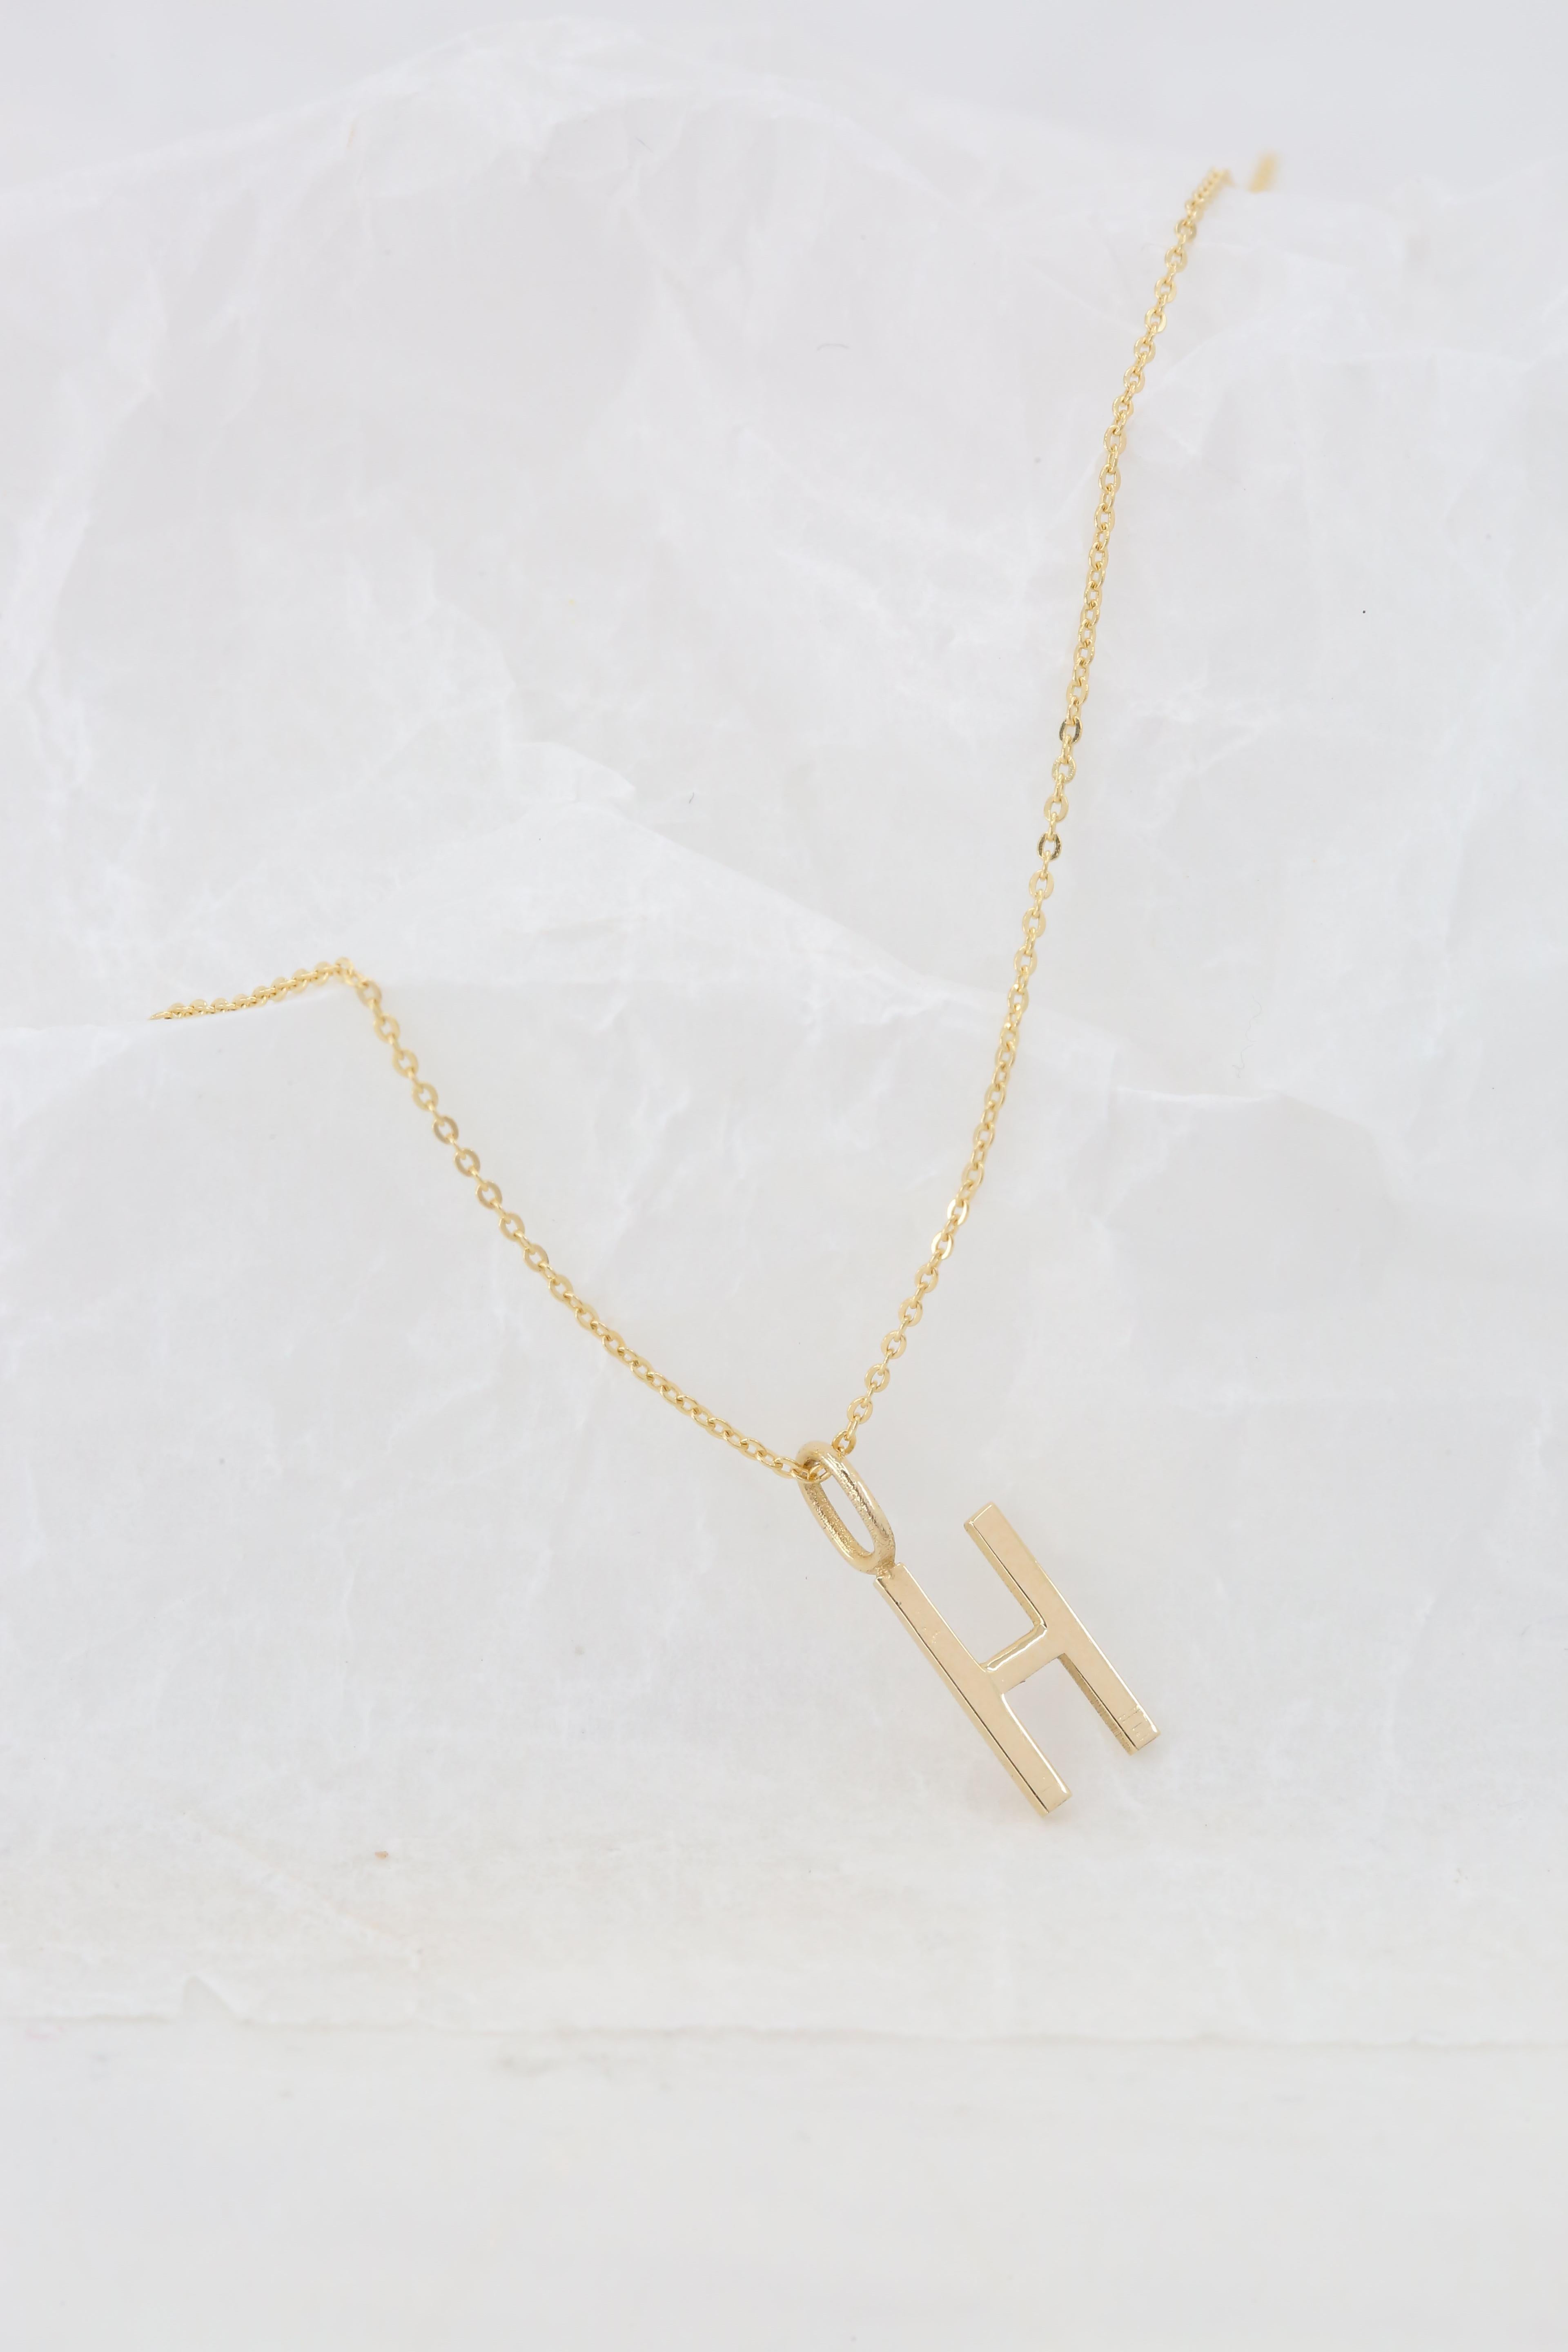 Modern 14k Gold Necklaces, Letter Necklace Models, Letter H Gold Necklace-Gift Necklace For Sale